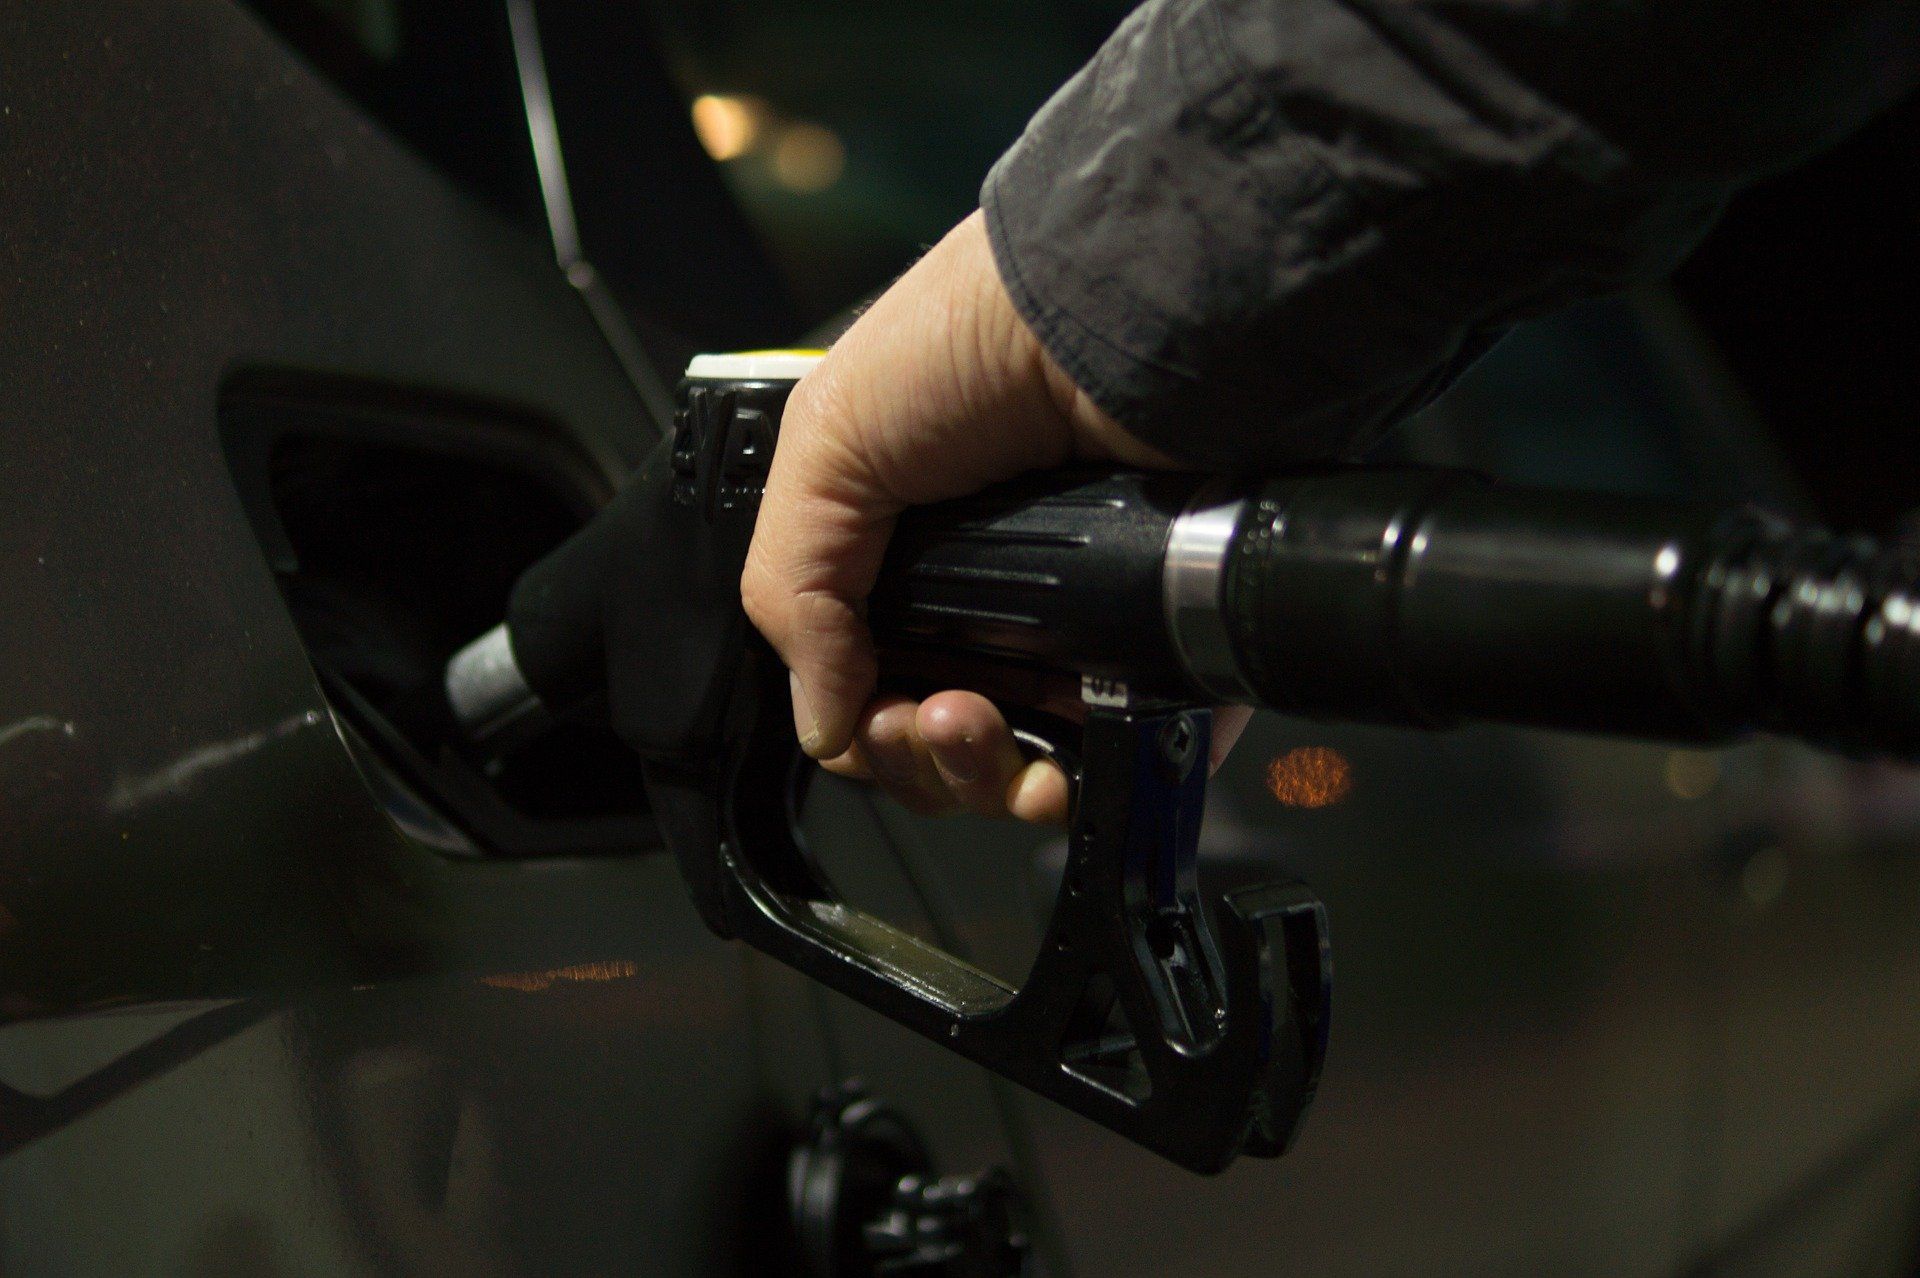 Fuel price July 8, 2022: Petrol Rs 96.72, diesel Rs 89.62 in Delhi